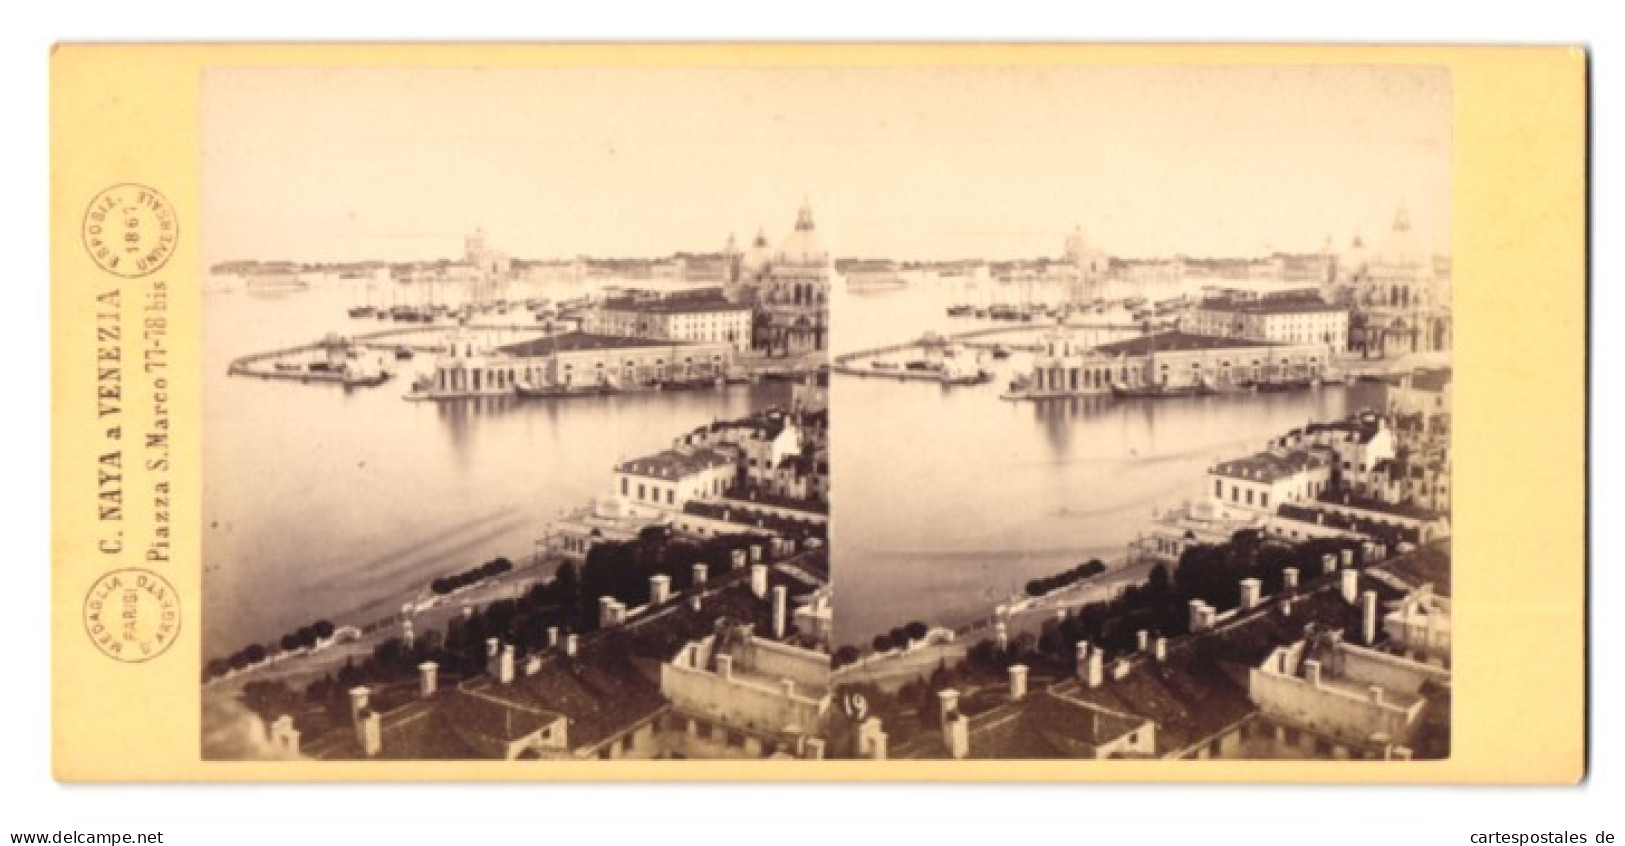 Stereo-Foto C. Naya, Venezia, Ansicht Venedig, Panorama Dogana Di Mare, 1869  - Stereo-Photographie